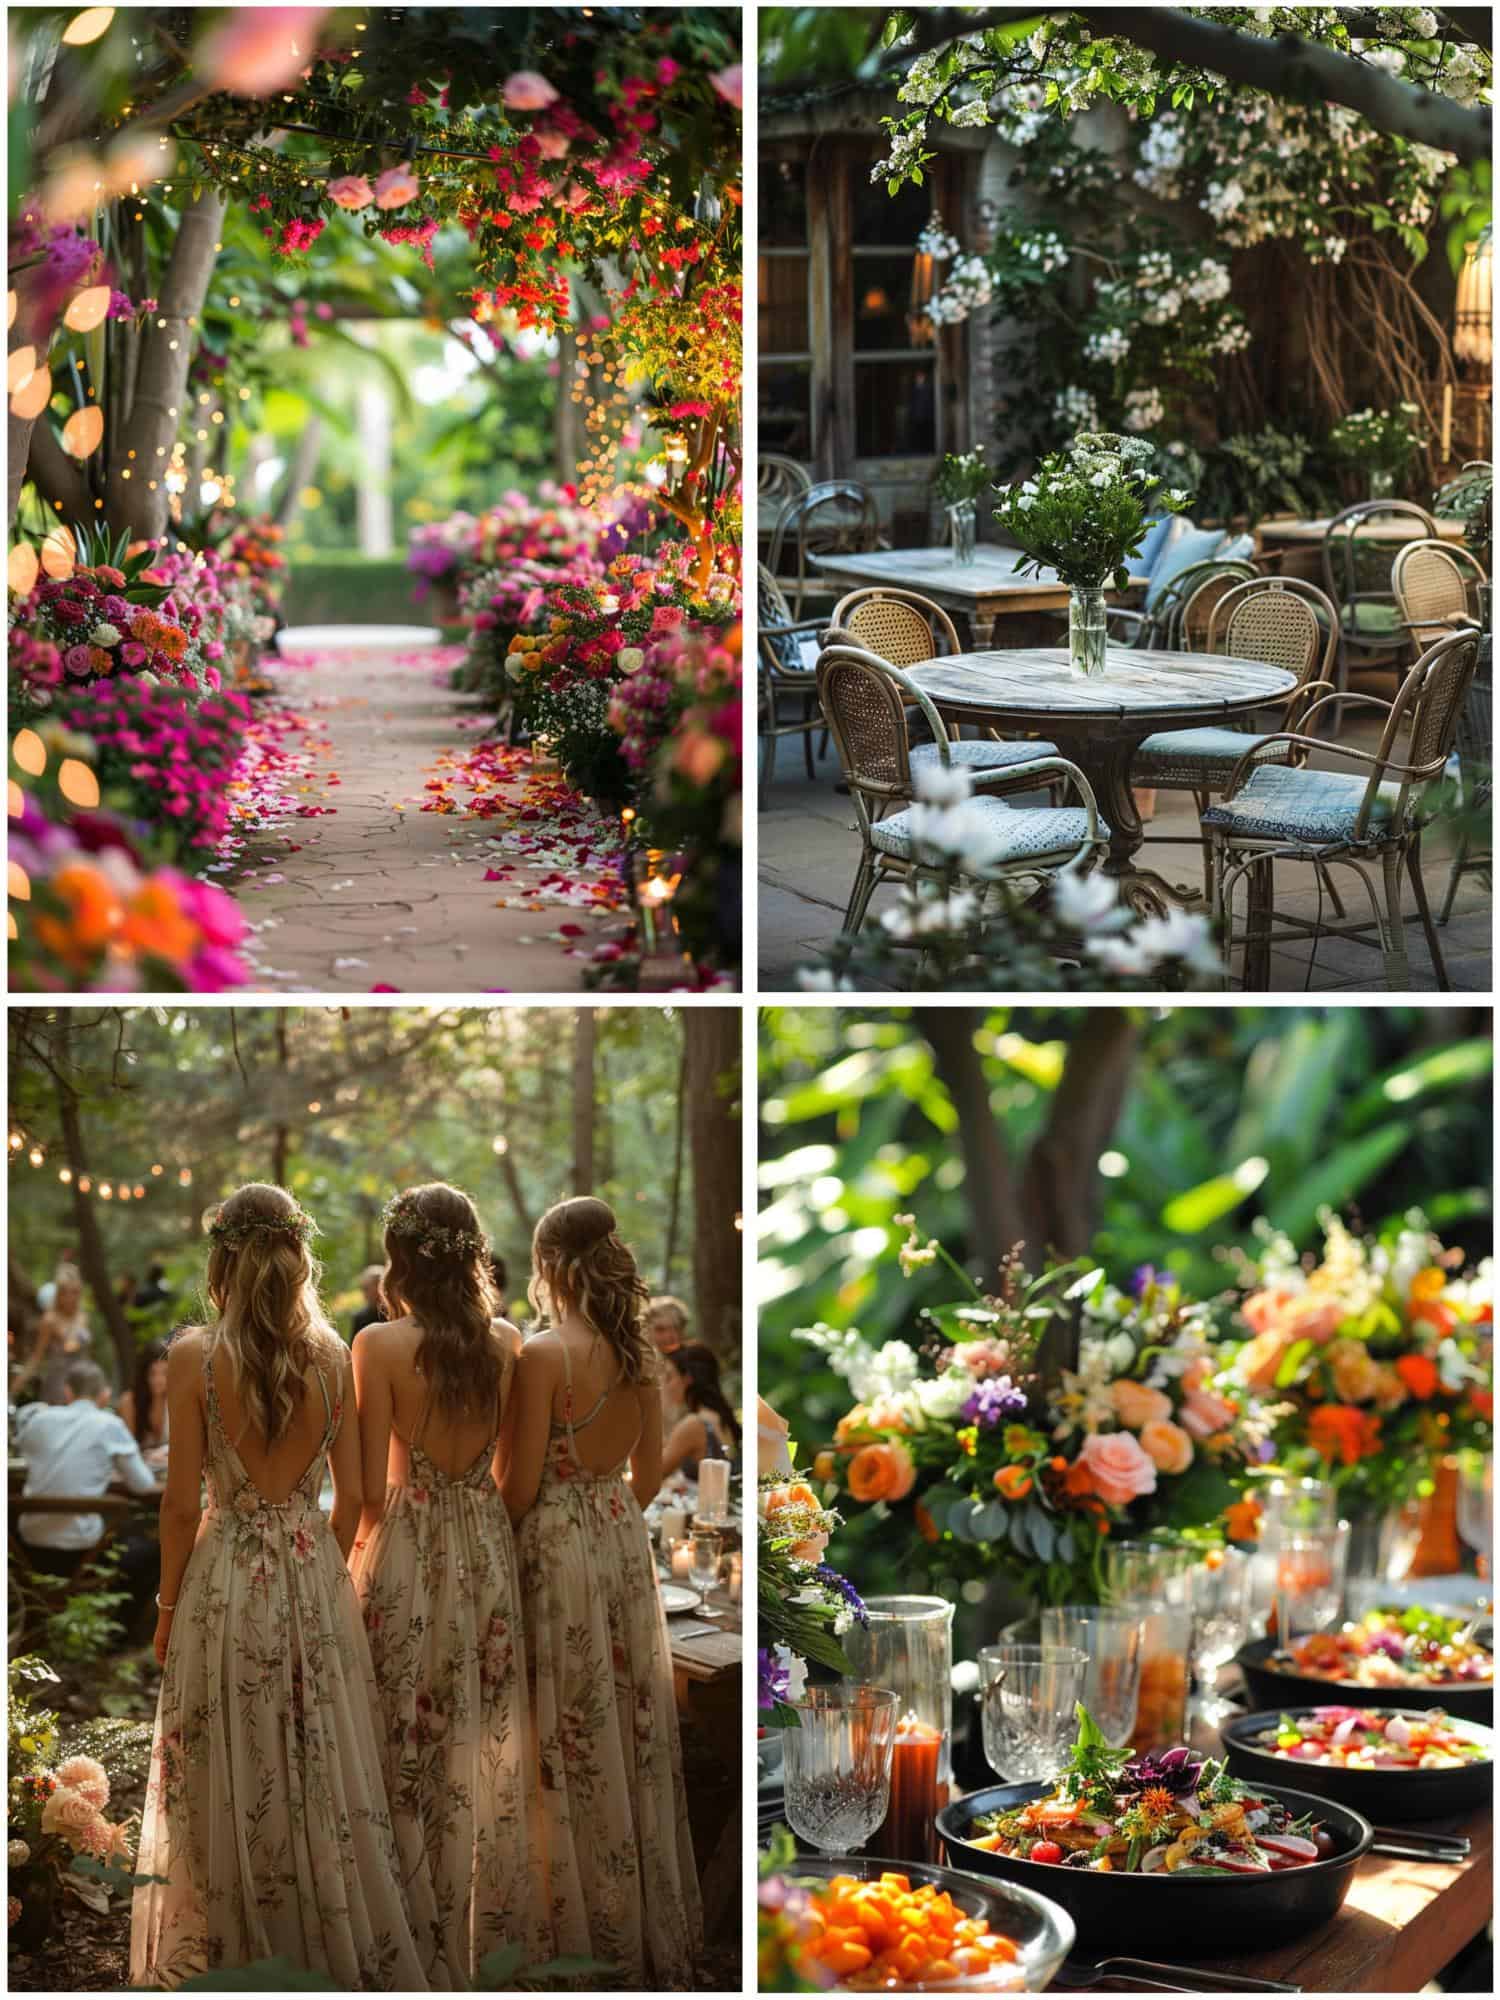 outdoor wedding theme ideas for garden soiree